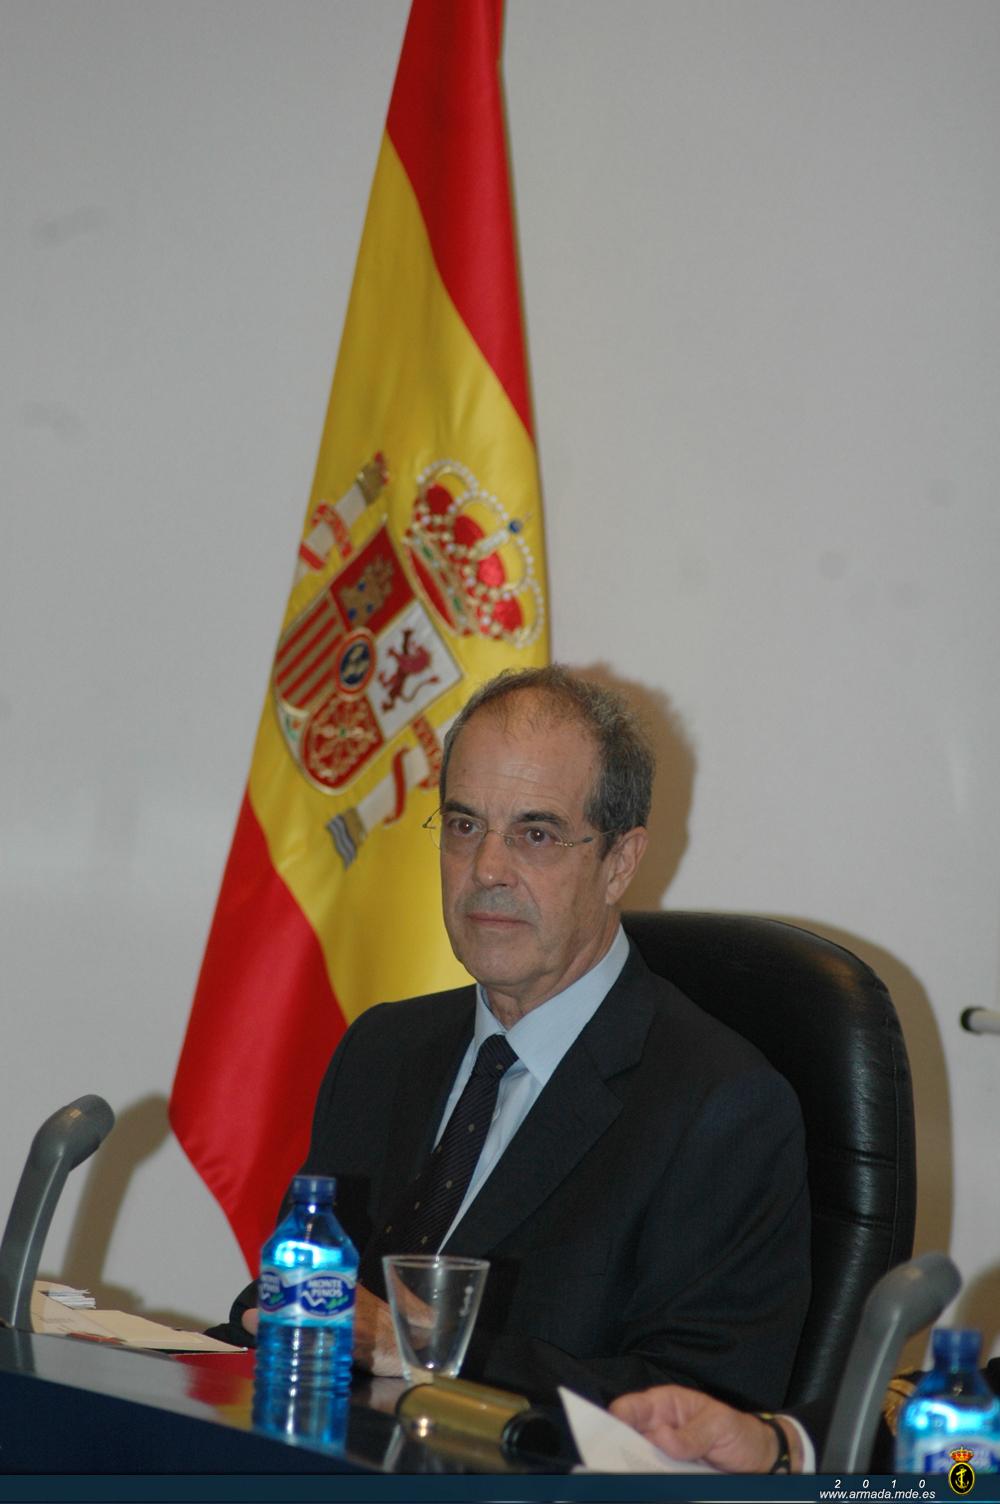 La primera ponencia fue llevada a cabo por el Ilmo. Sr. D. Rafael Benítez, Catedrático de Historia Moderna de la Universidad de Valencia